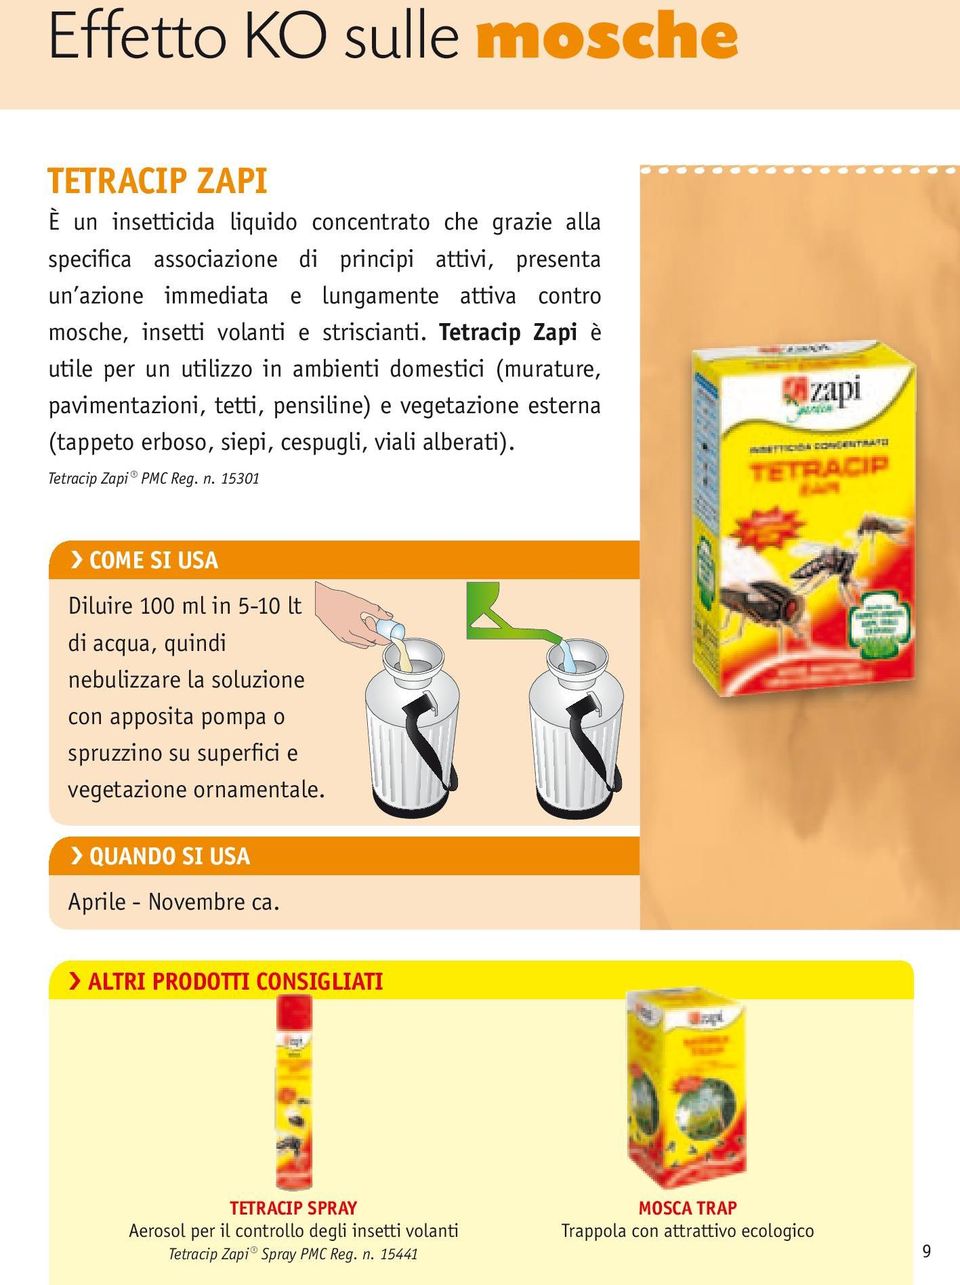 Tetracip Zapi è utile per un utilizzo in ambienti domestici (murature, pavimentazioni, tetti, pensiline) e vegetazione esterna (tappeto erboso, siepi, cespugli, viali alberati). Tetracip Zapi PMC Reg.